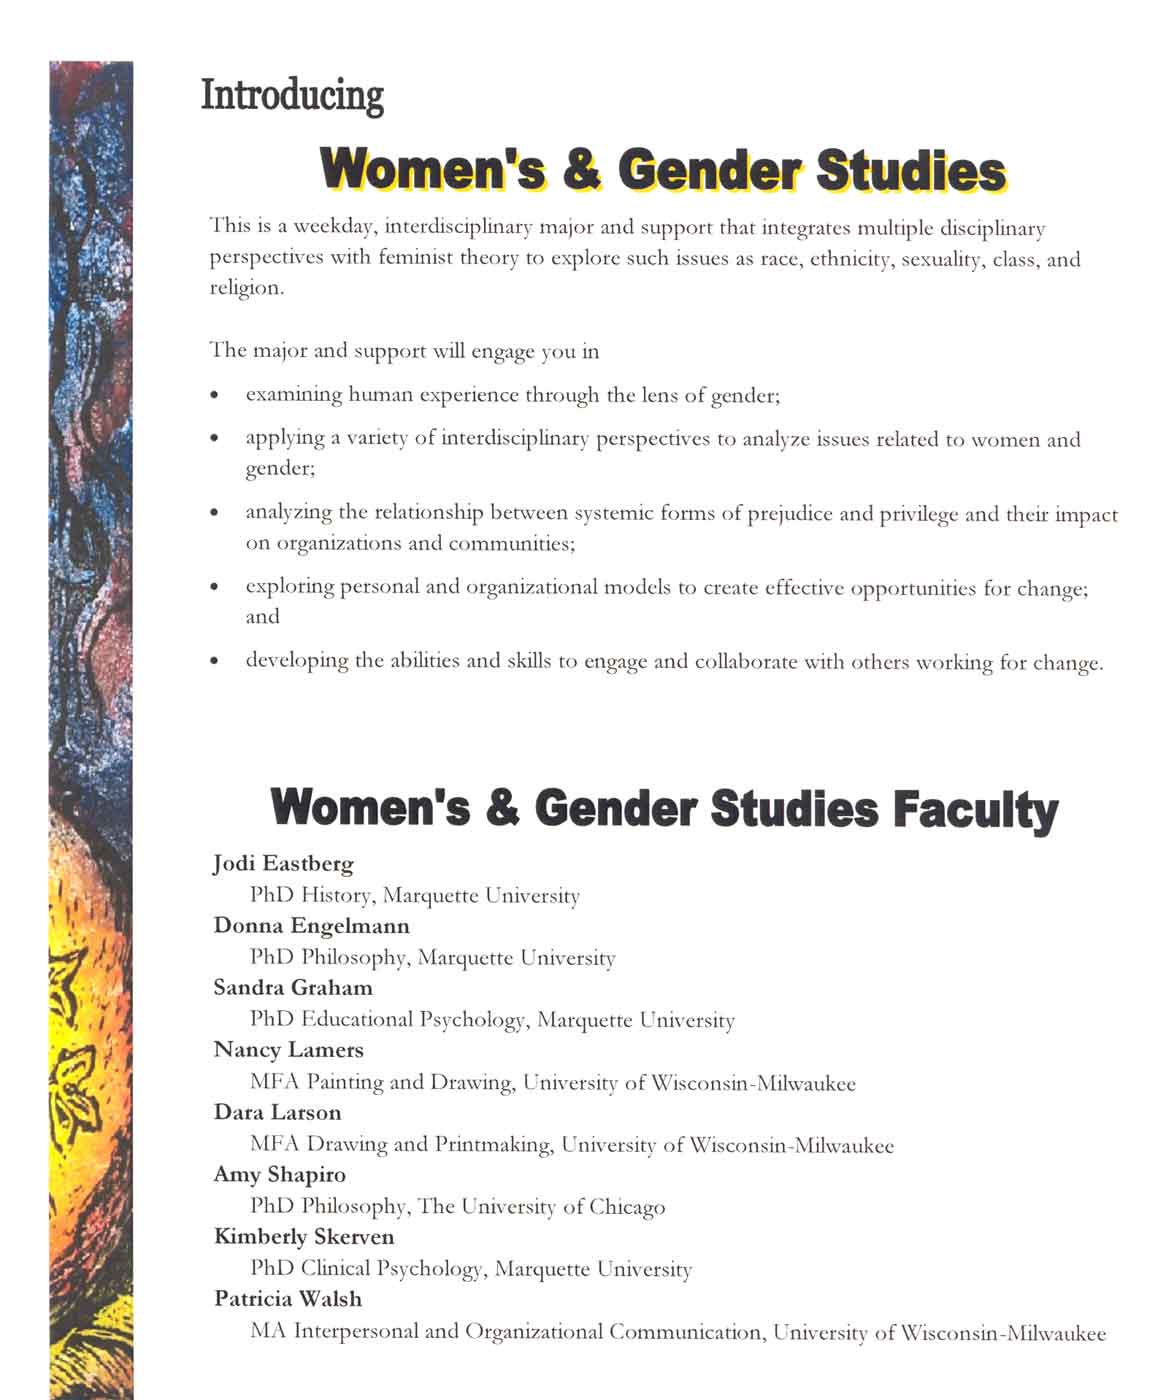 Women's and Gender Studies Flyer Informational Content